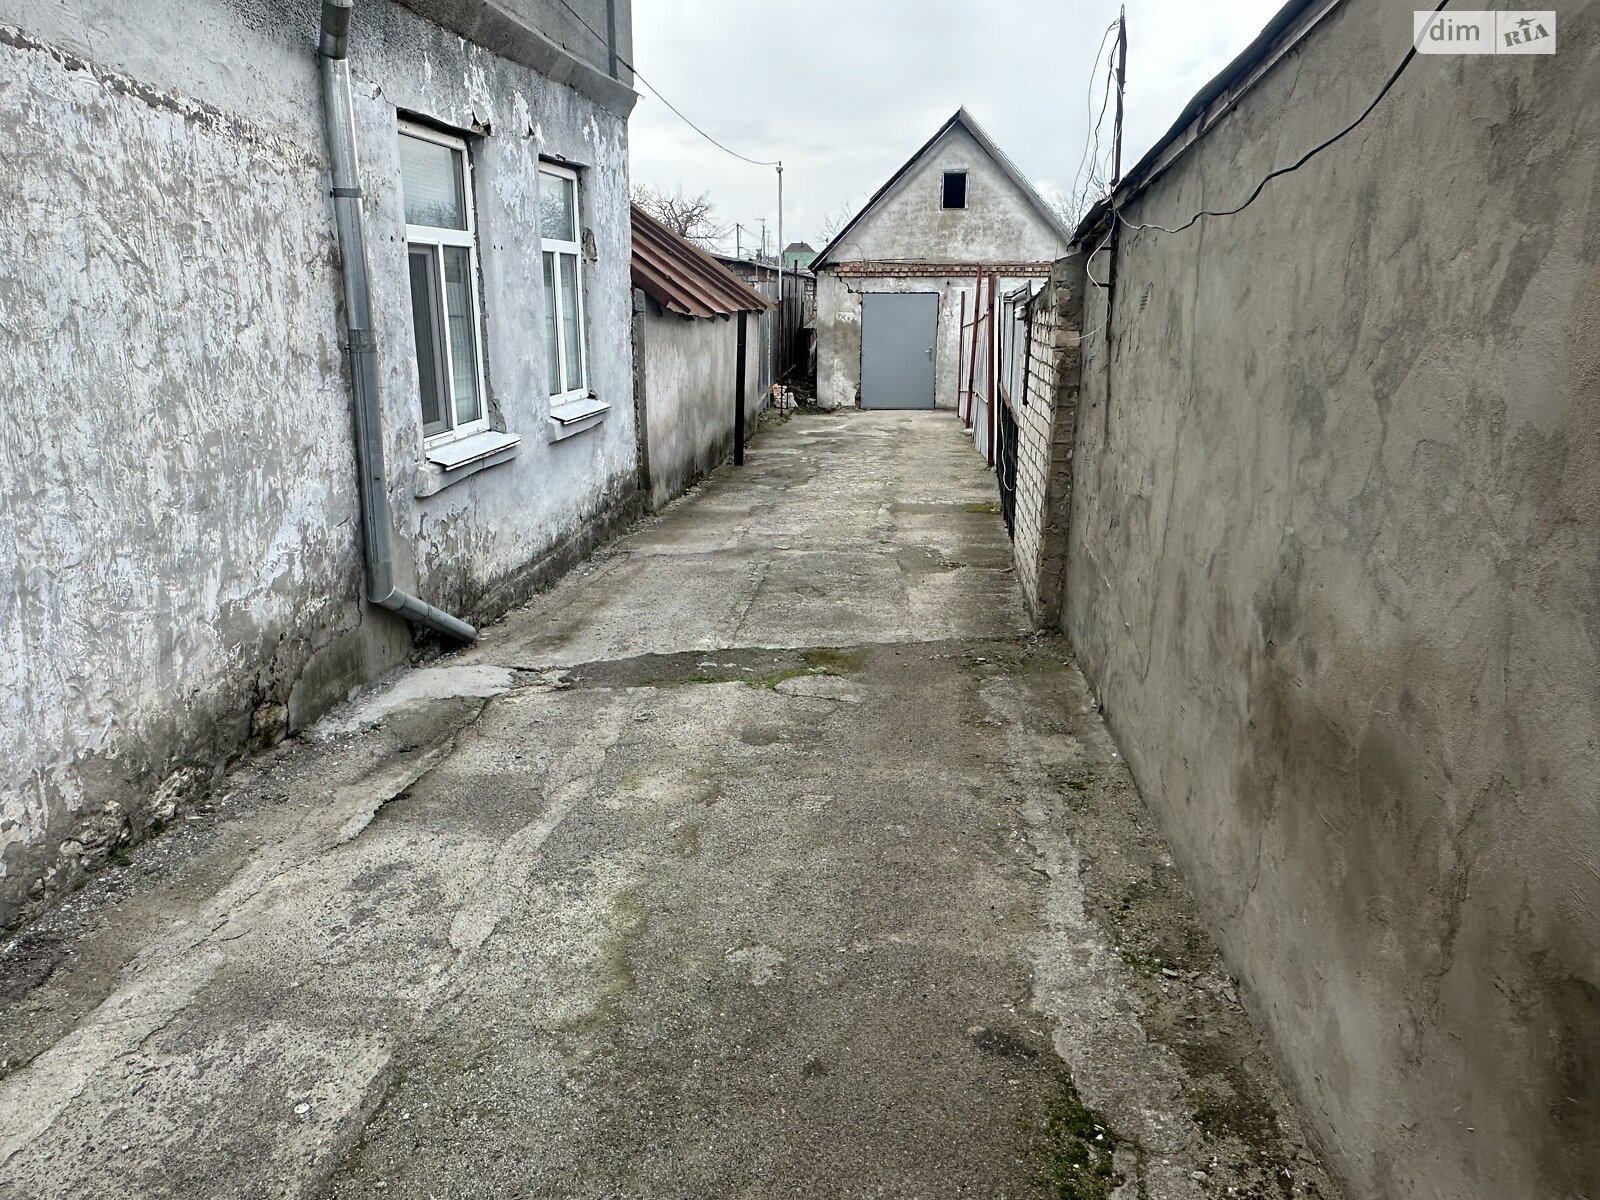 Продажа части дома в Николаеве, улица Мартовского Восстания, 1 комната фото 1